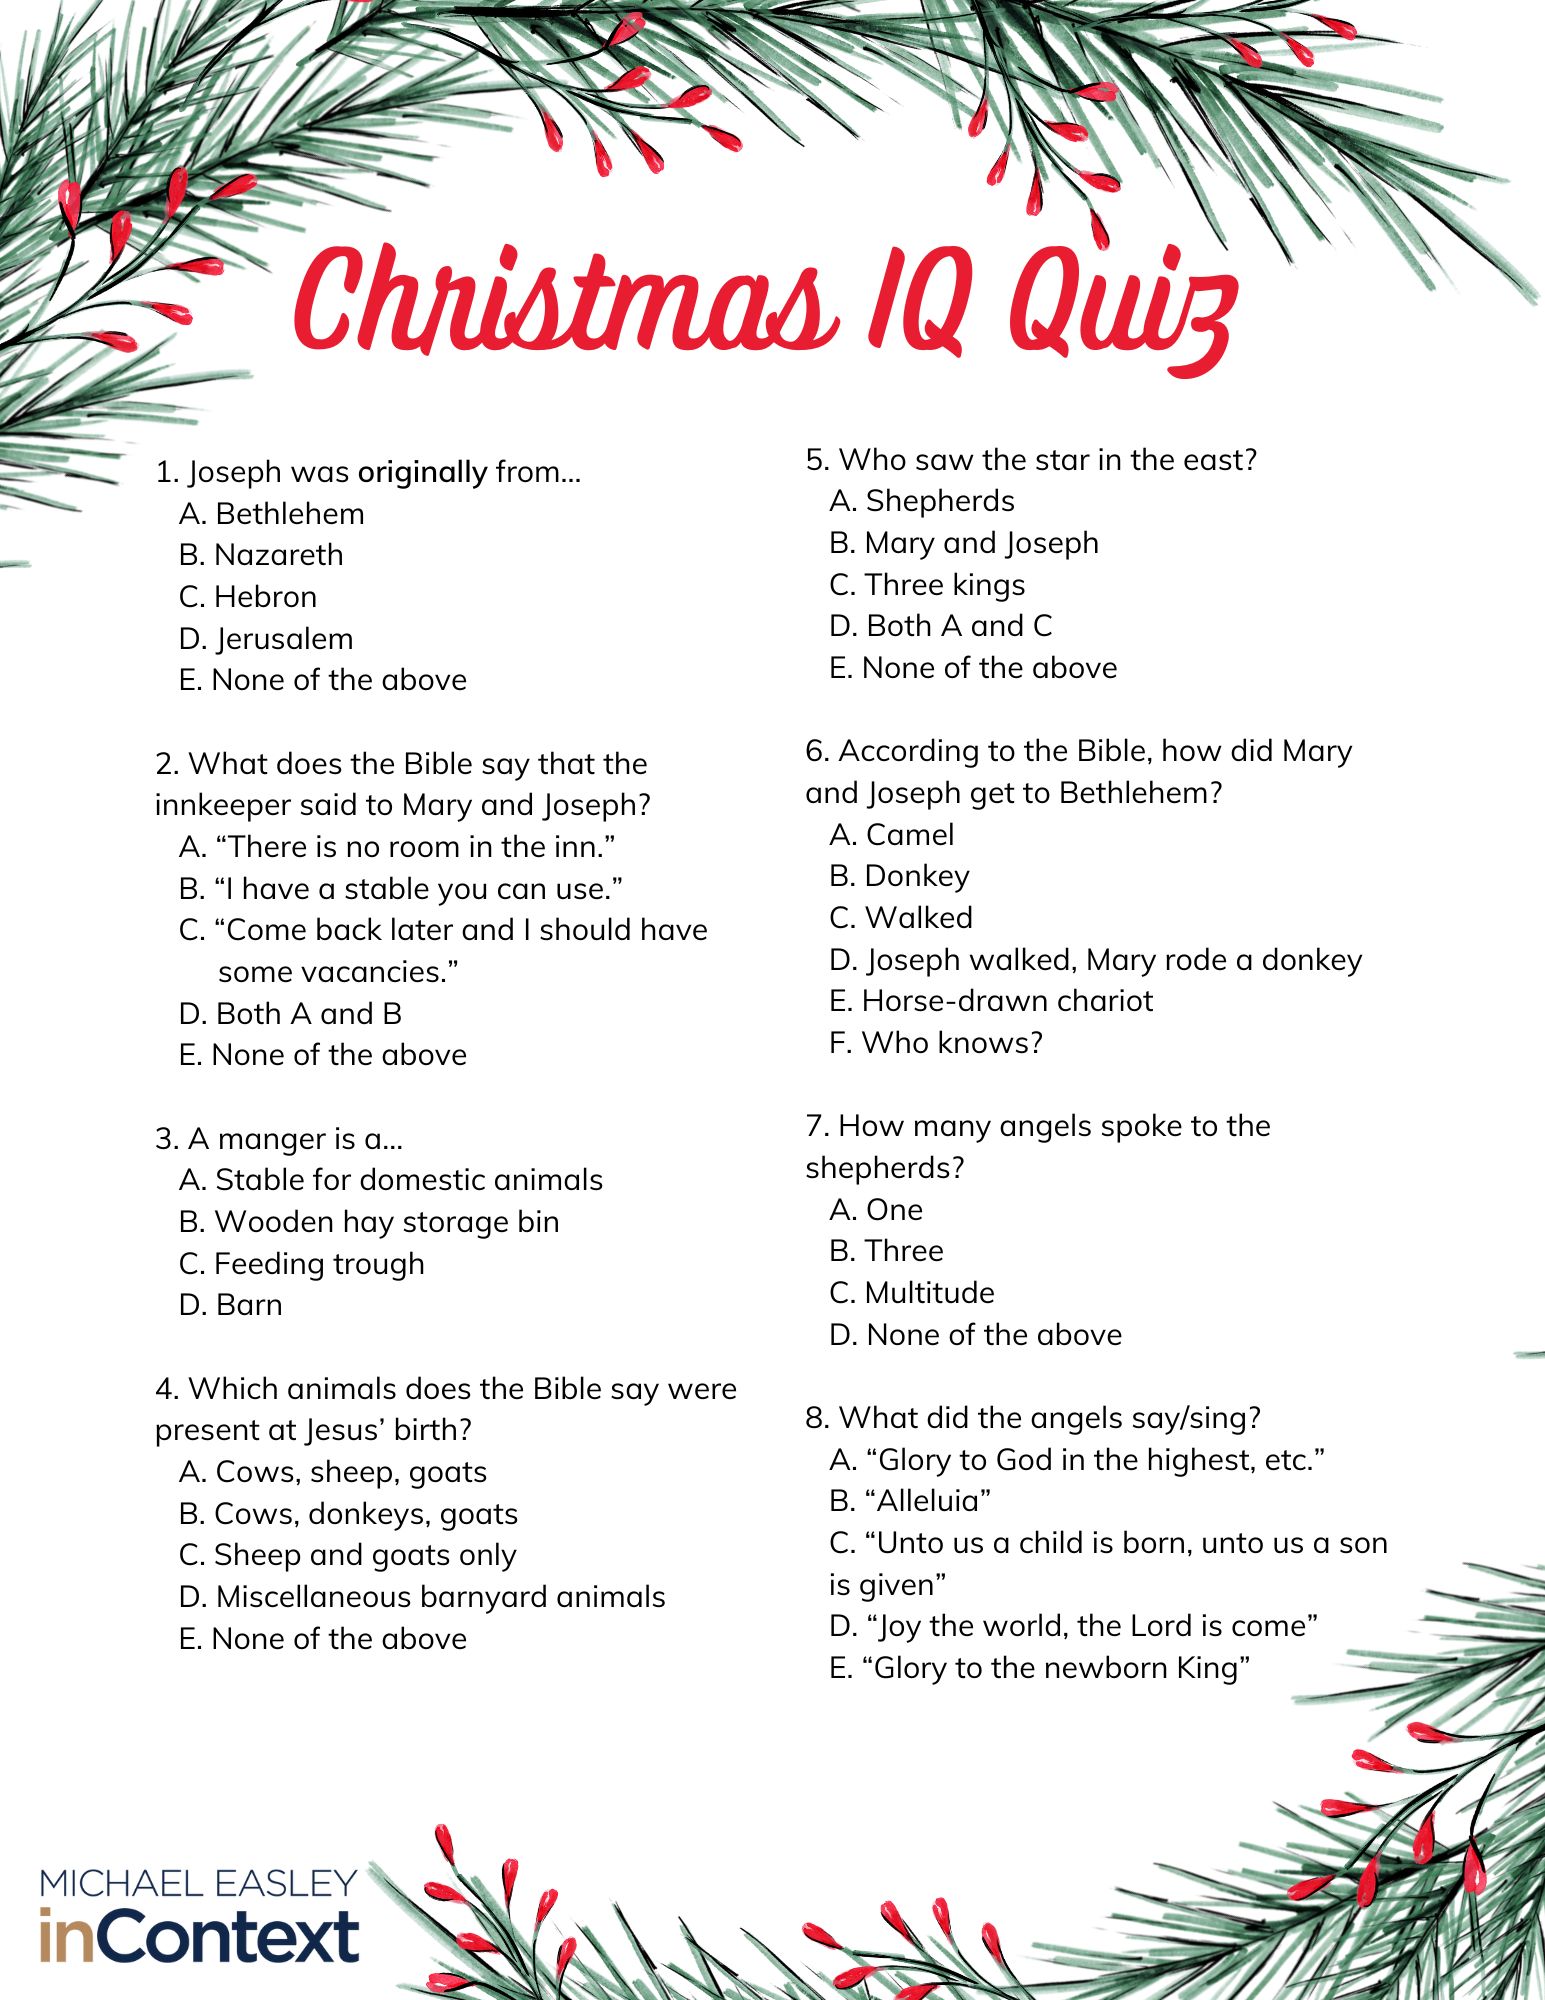 Christmas IQ Quiz - Michael Easley InContext